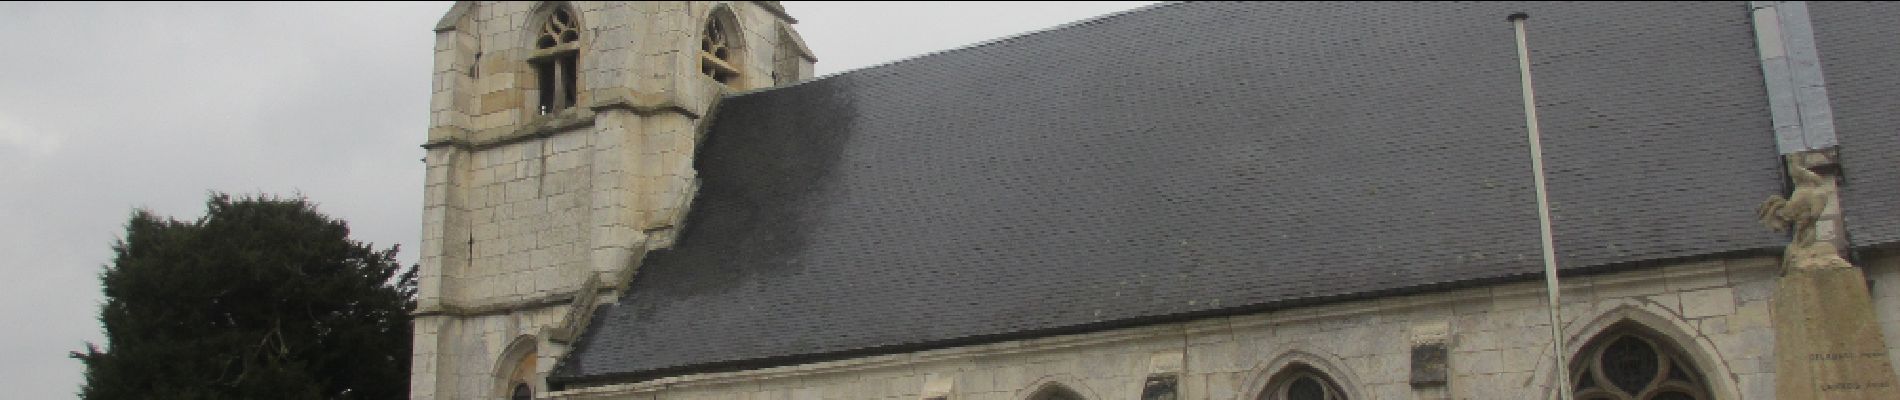 Point d'intérêt Hénouville - Eglise d'Hénouville - Photo